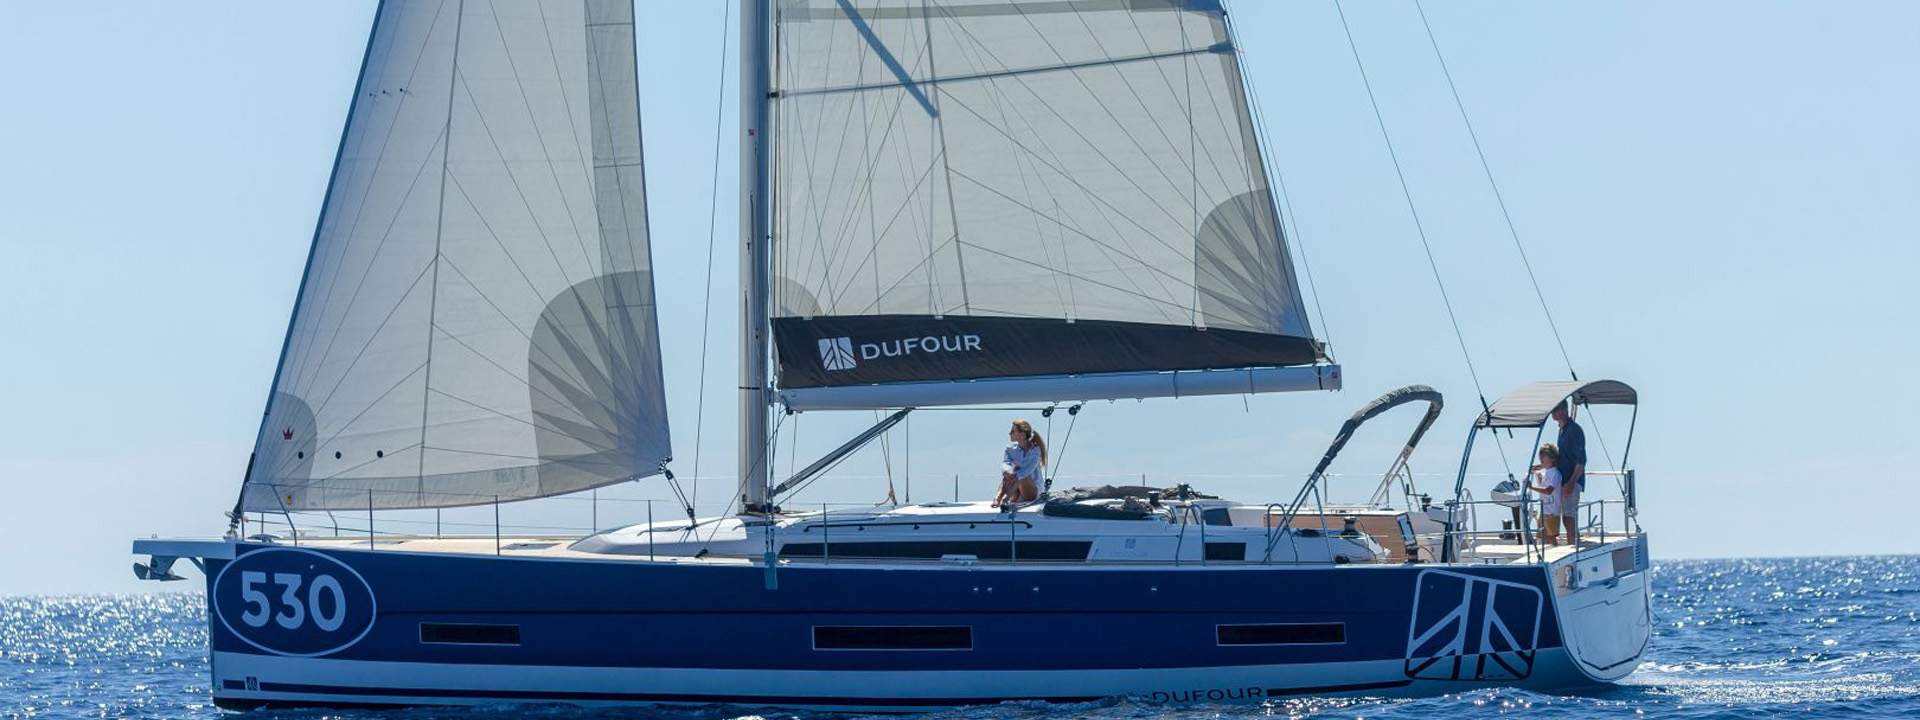 Segelboot Dufour 530